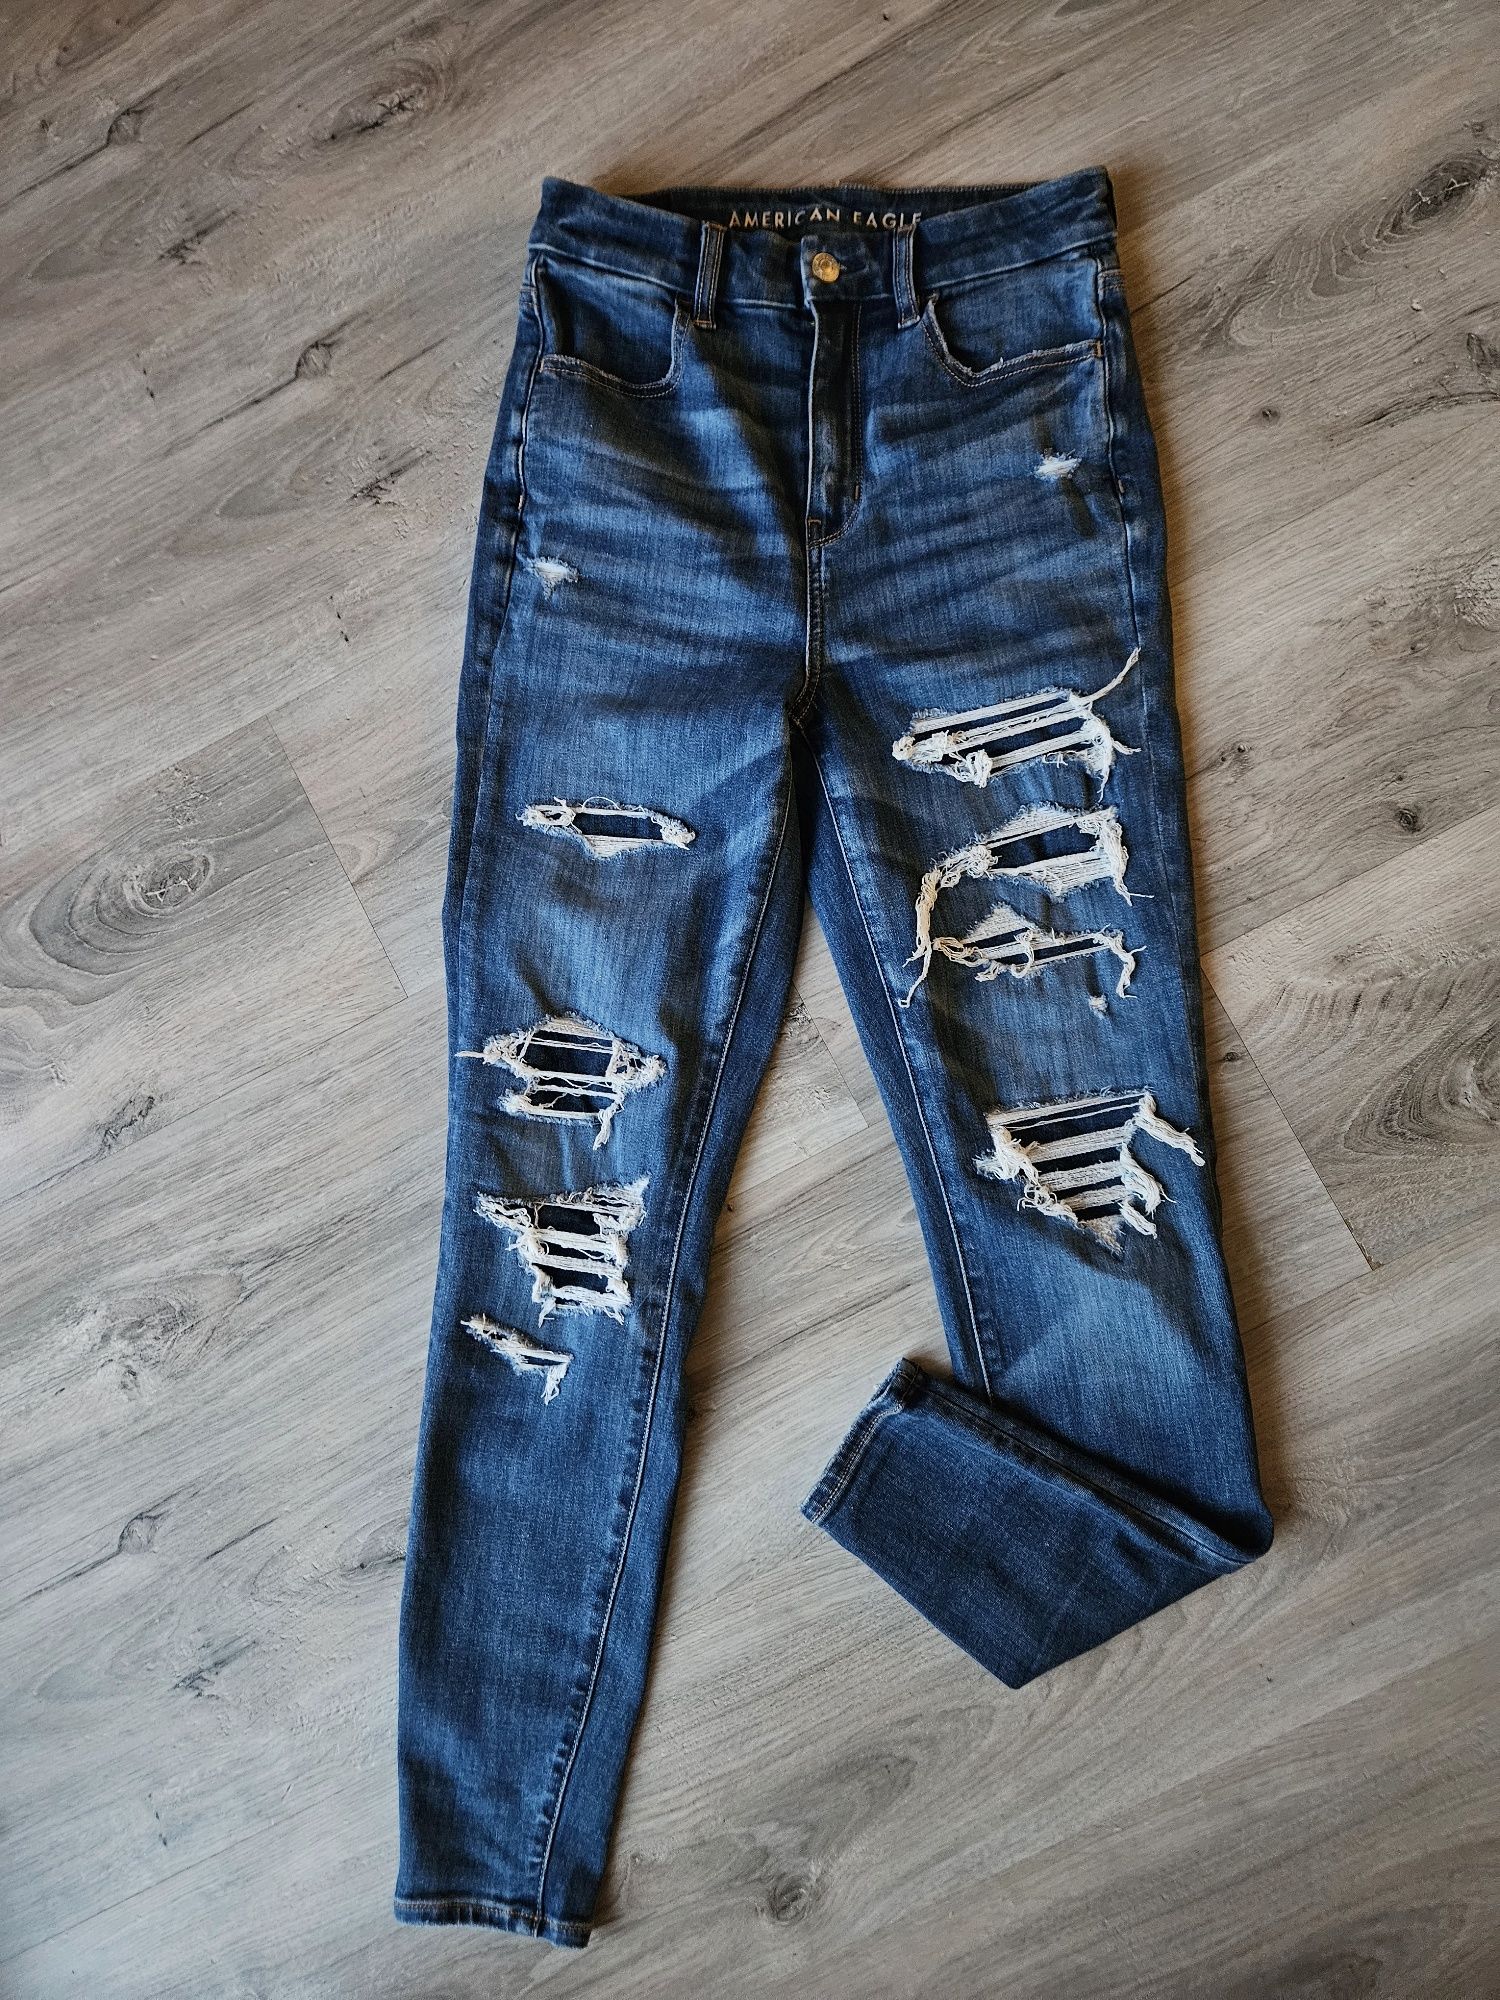 Damskie jeansy American Eagle. Rozmiar XS.